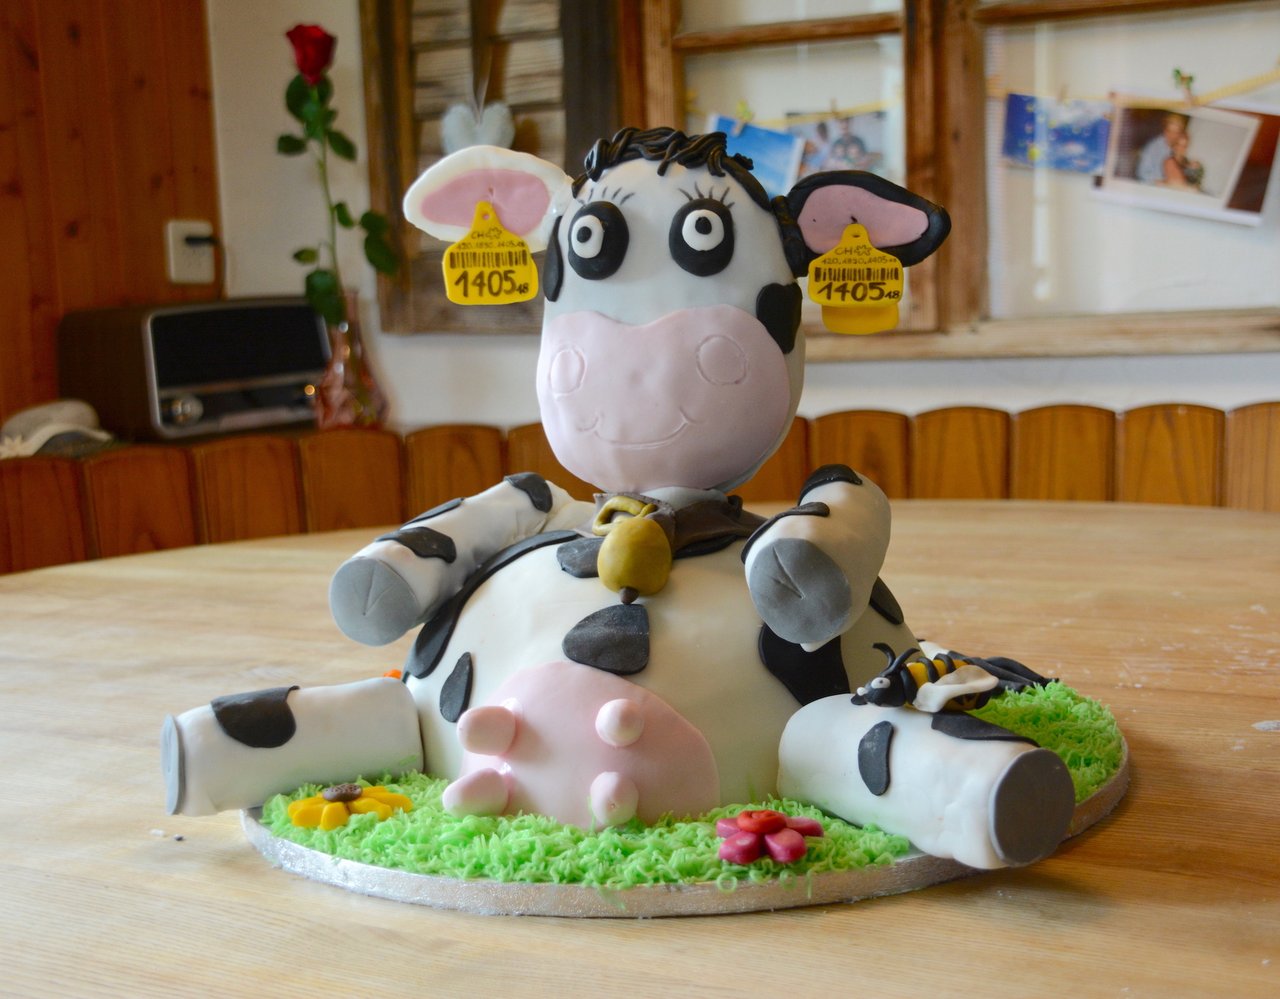 Das fertige Werk, Kuh "Verena", sieht zum Anbeissen lecker aus. (Bilder Andrea Gysin)